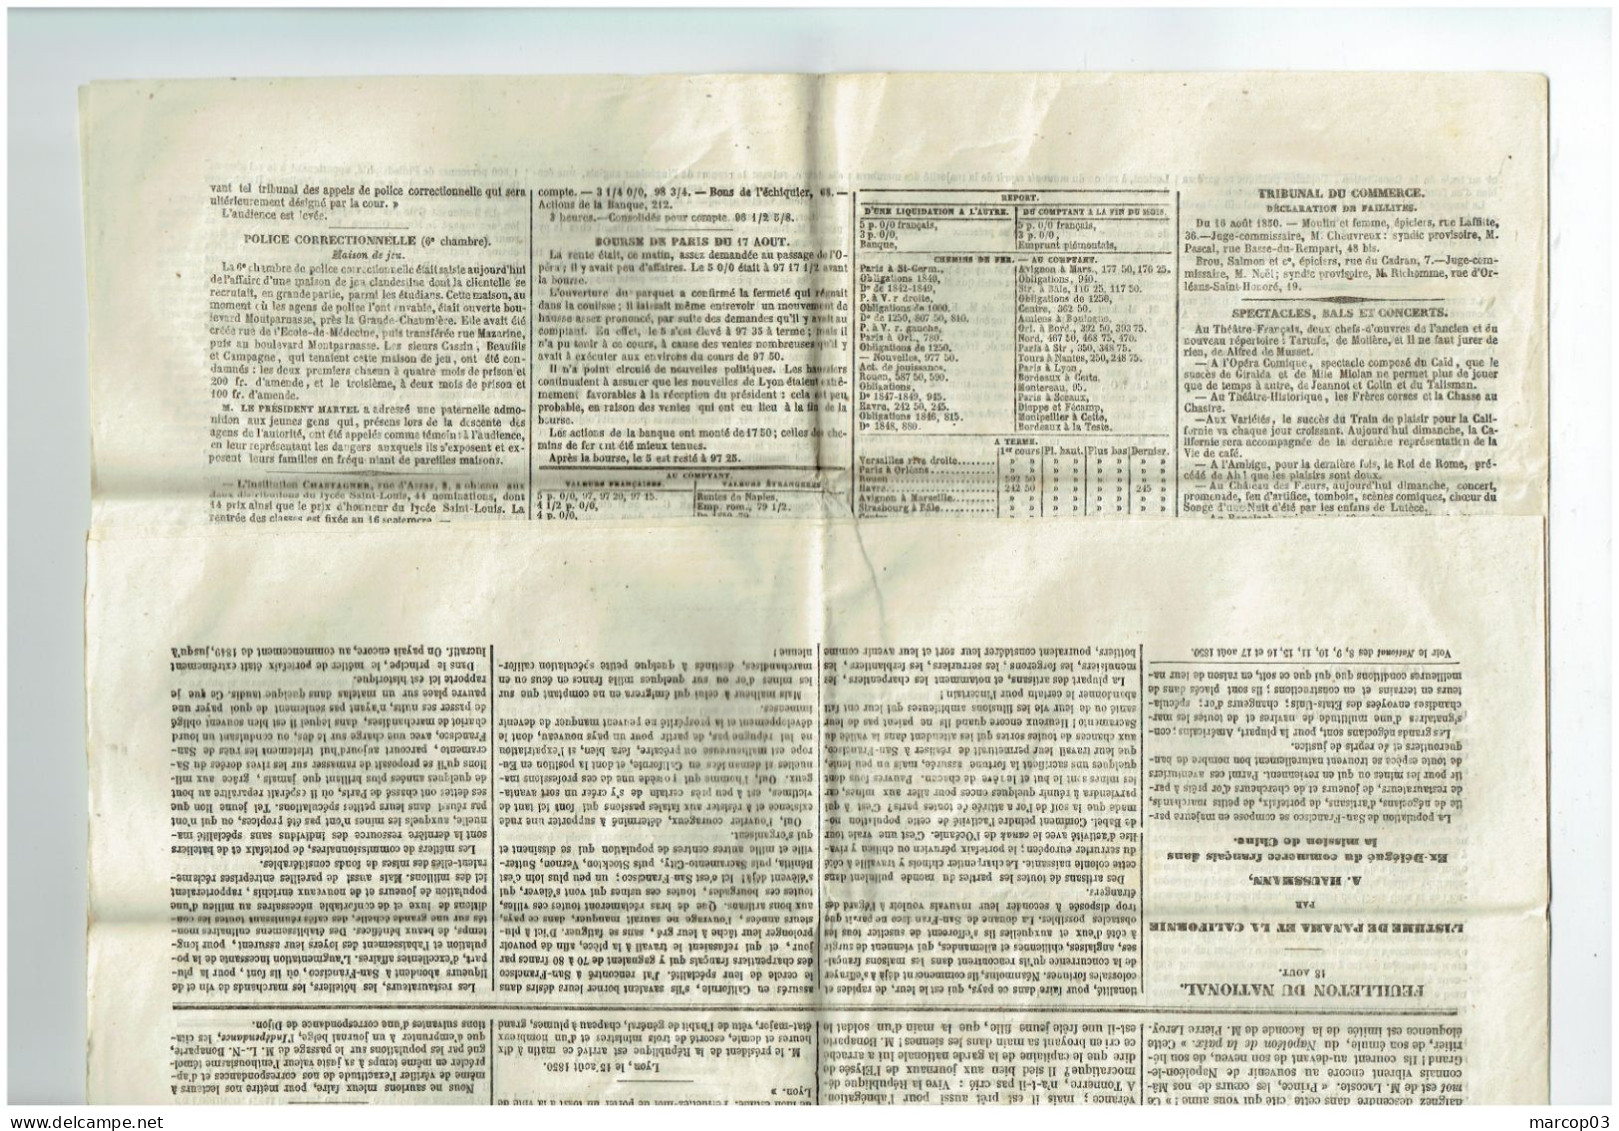 75 PARIS Journal Le Nationale Du 18/08/1850  Droit Fiscal De Timbre De 4 C Rouge SEINE Journal Complet SUP - Newspapers